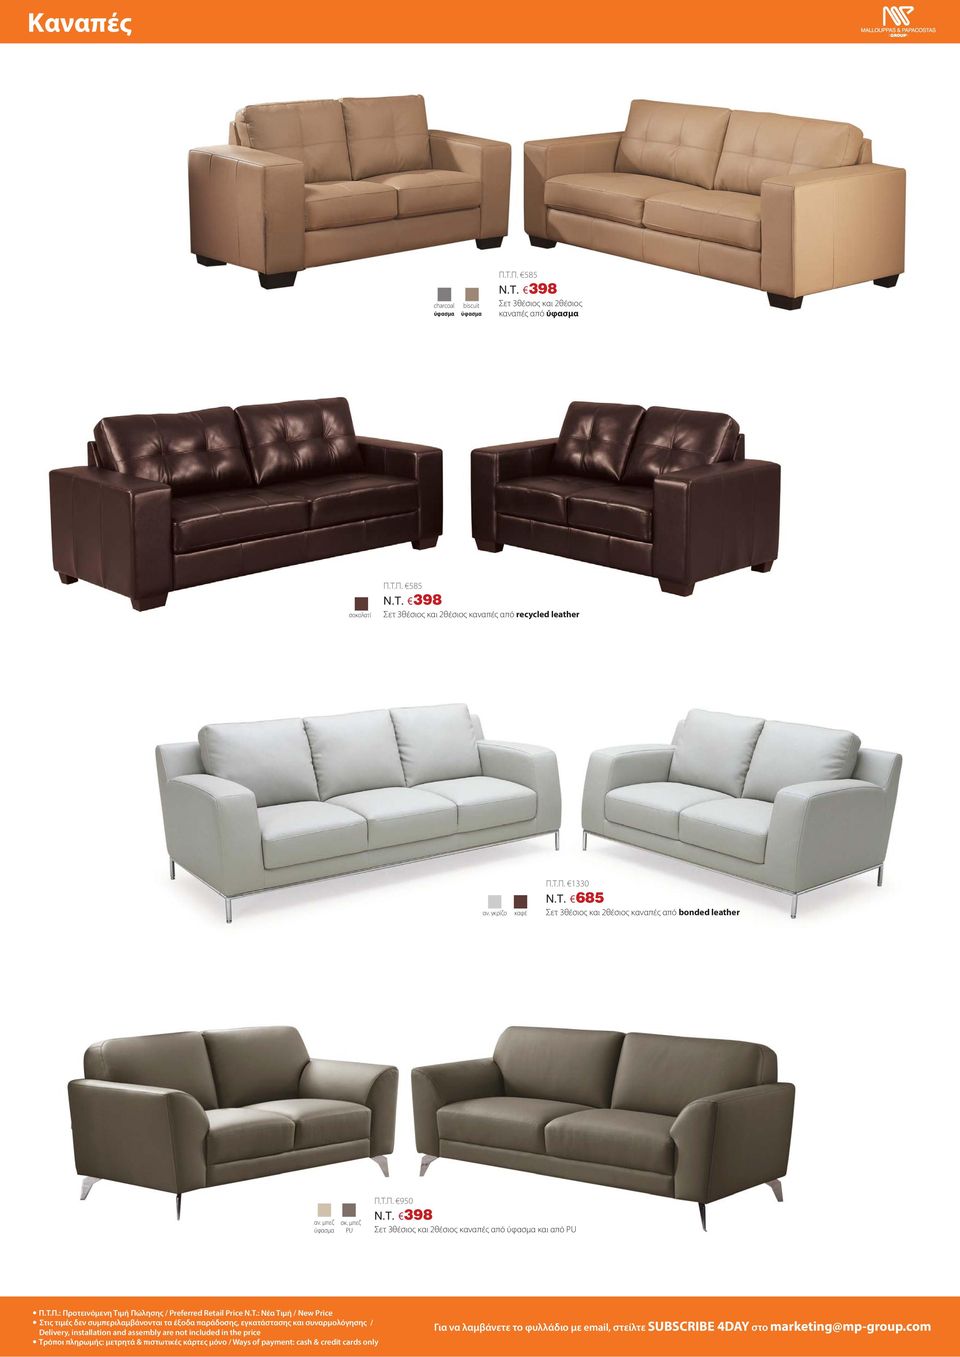 398 Σετ 3θέσιος και 2θέσιος καναπές από και από PU Π.Τ.Π.: Προτεινόμενη Τιμή Πώλησης / Preferred Retail Price N.T.